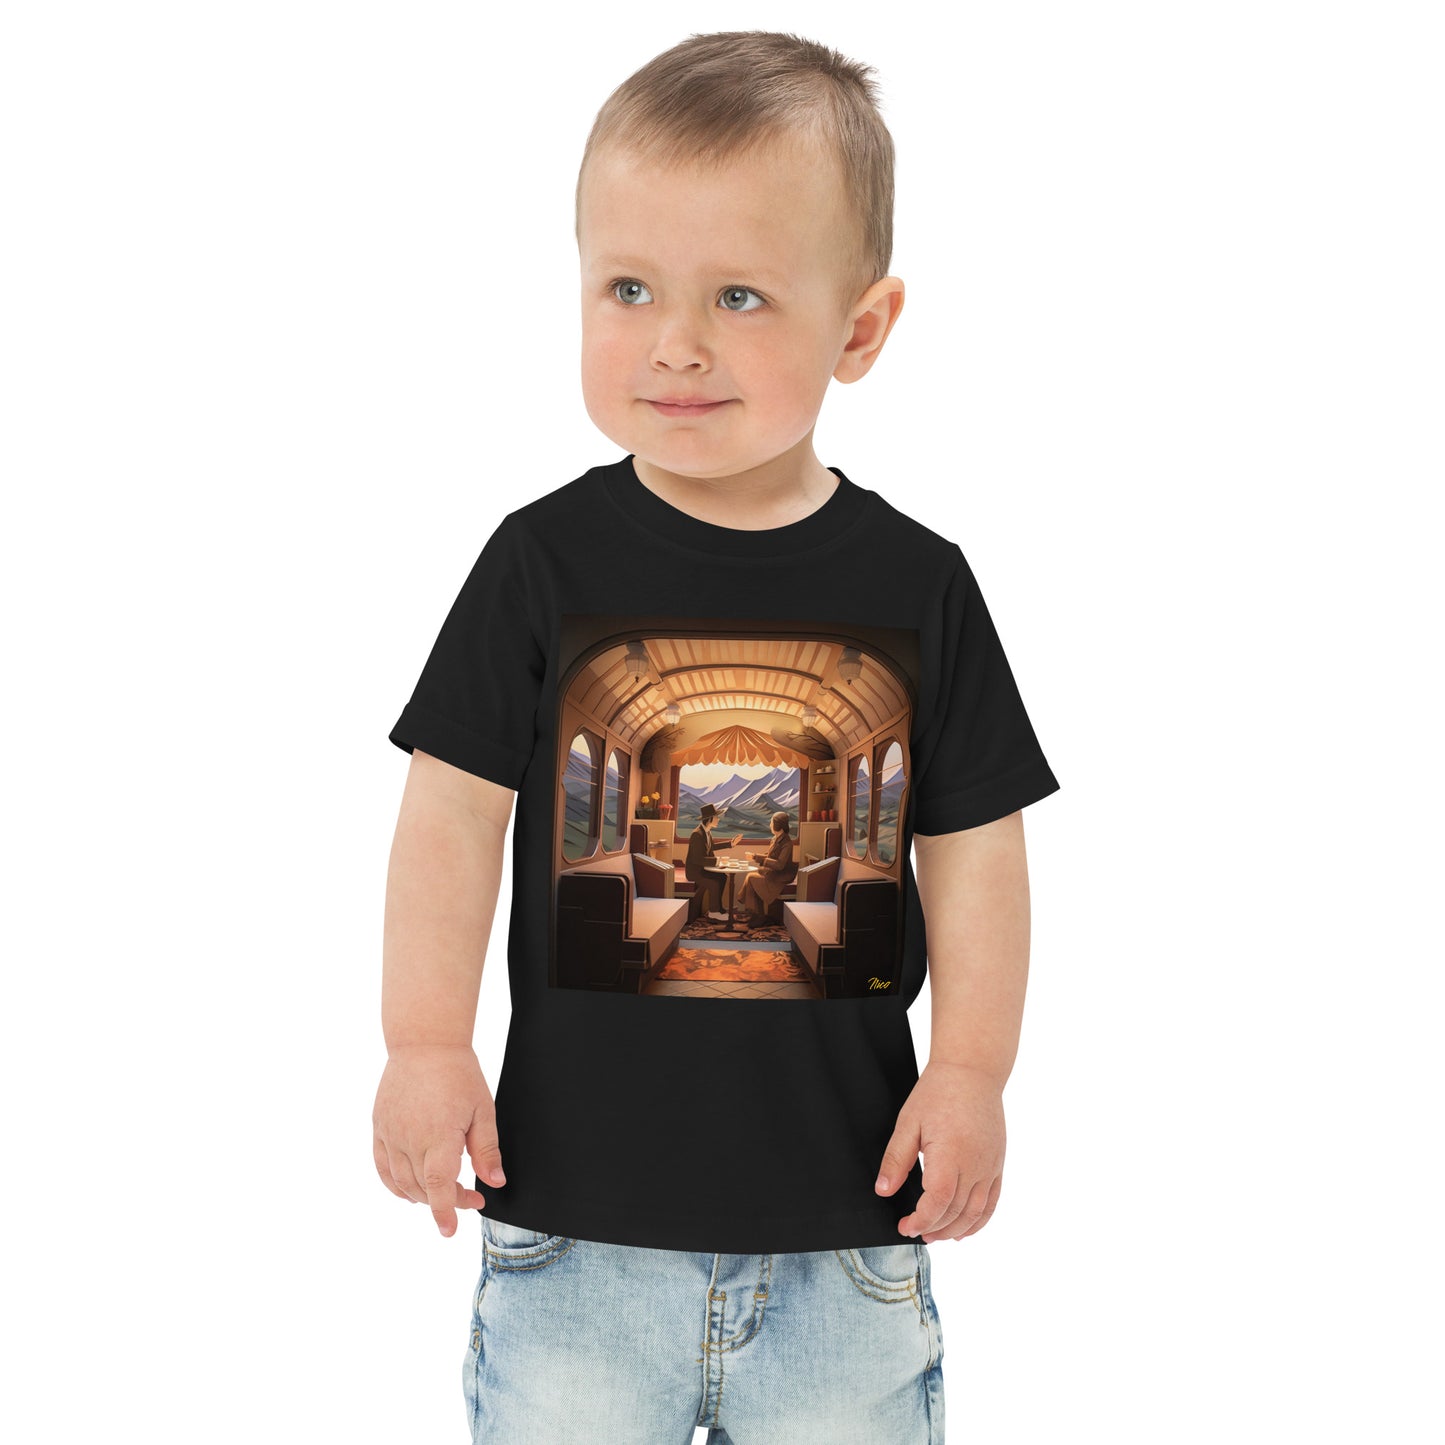 Orient Express Series Print #10 - Toddler jersey t-shirt